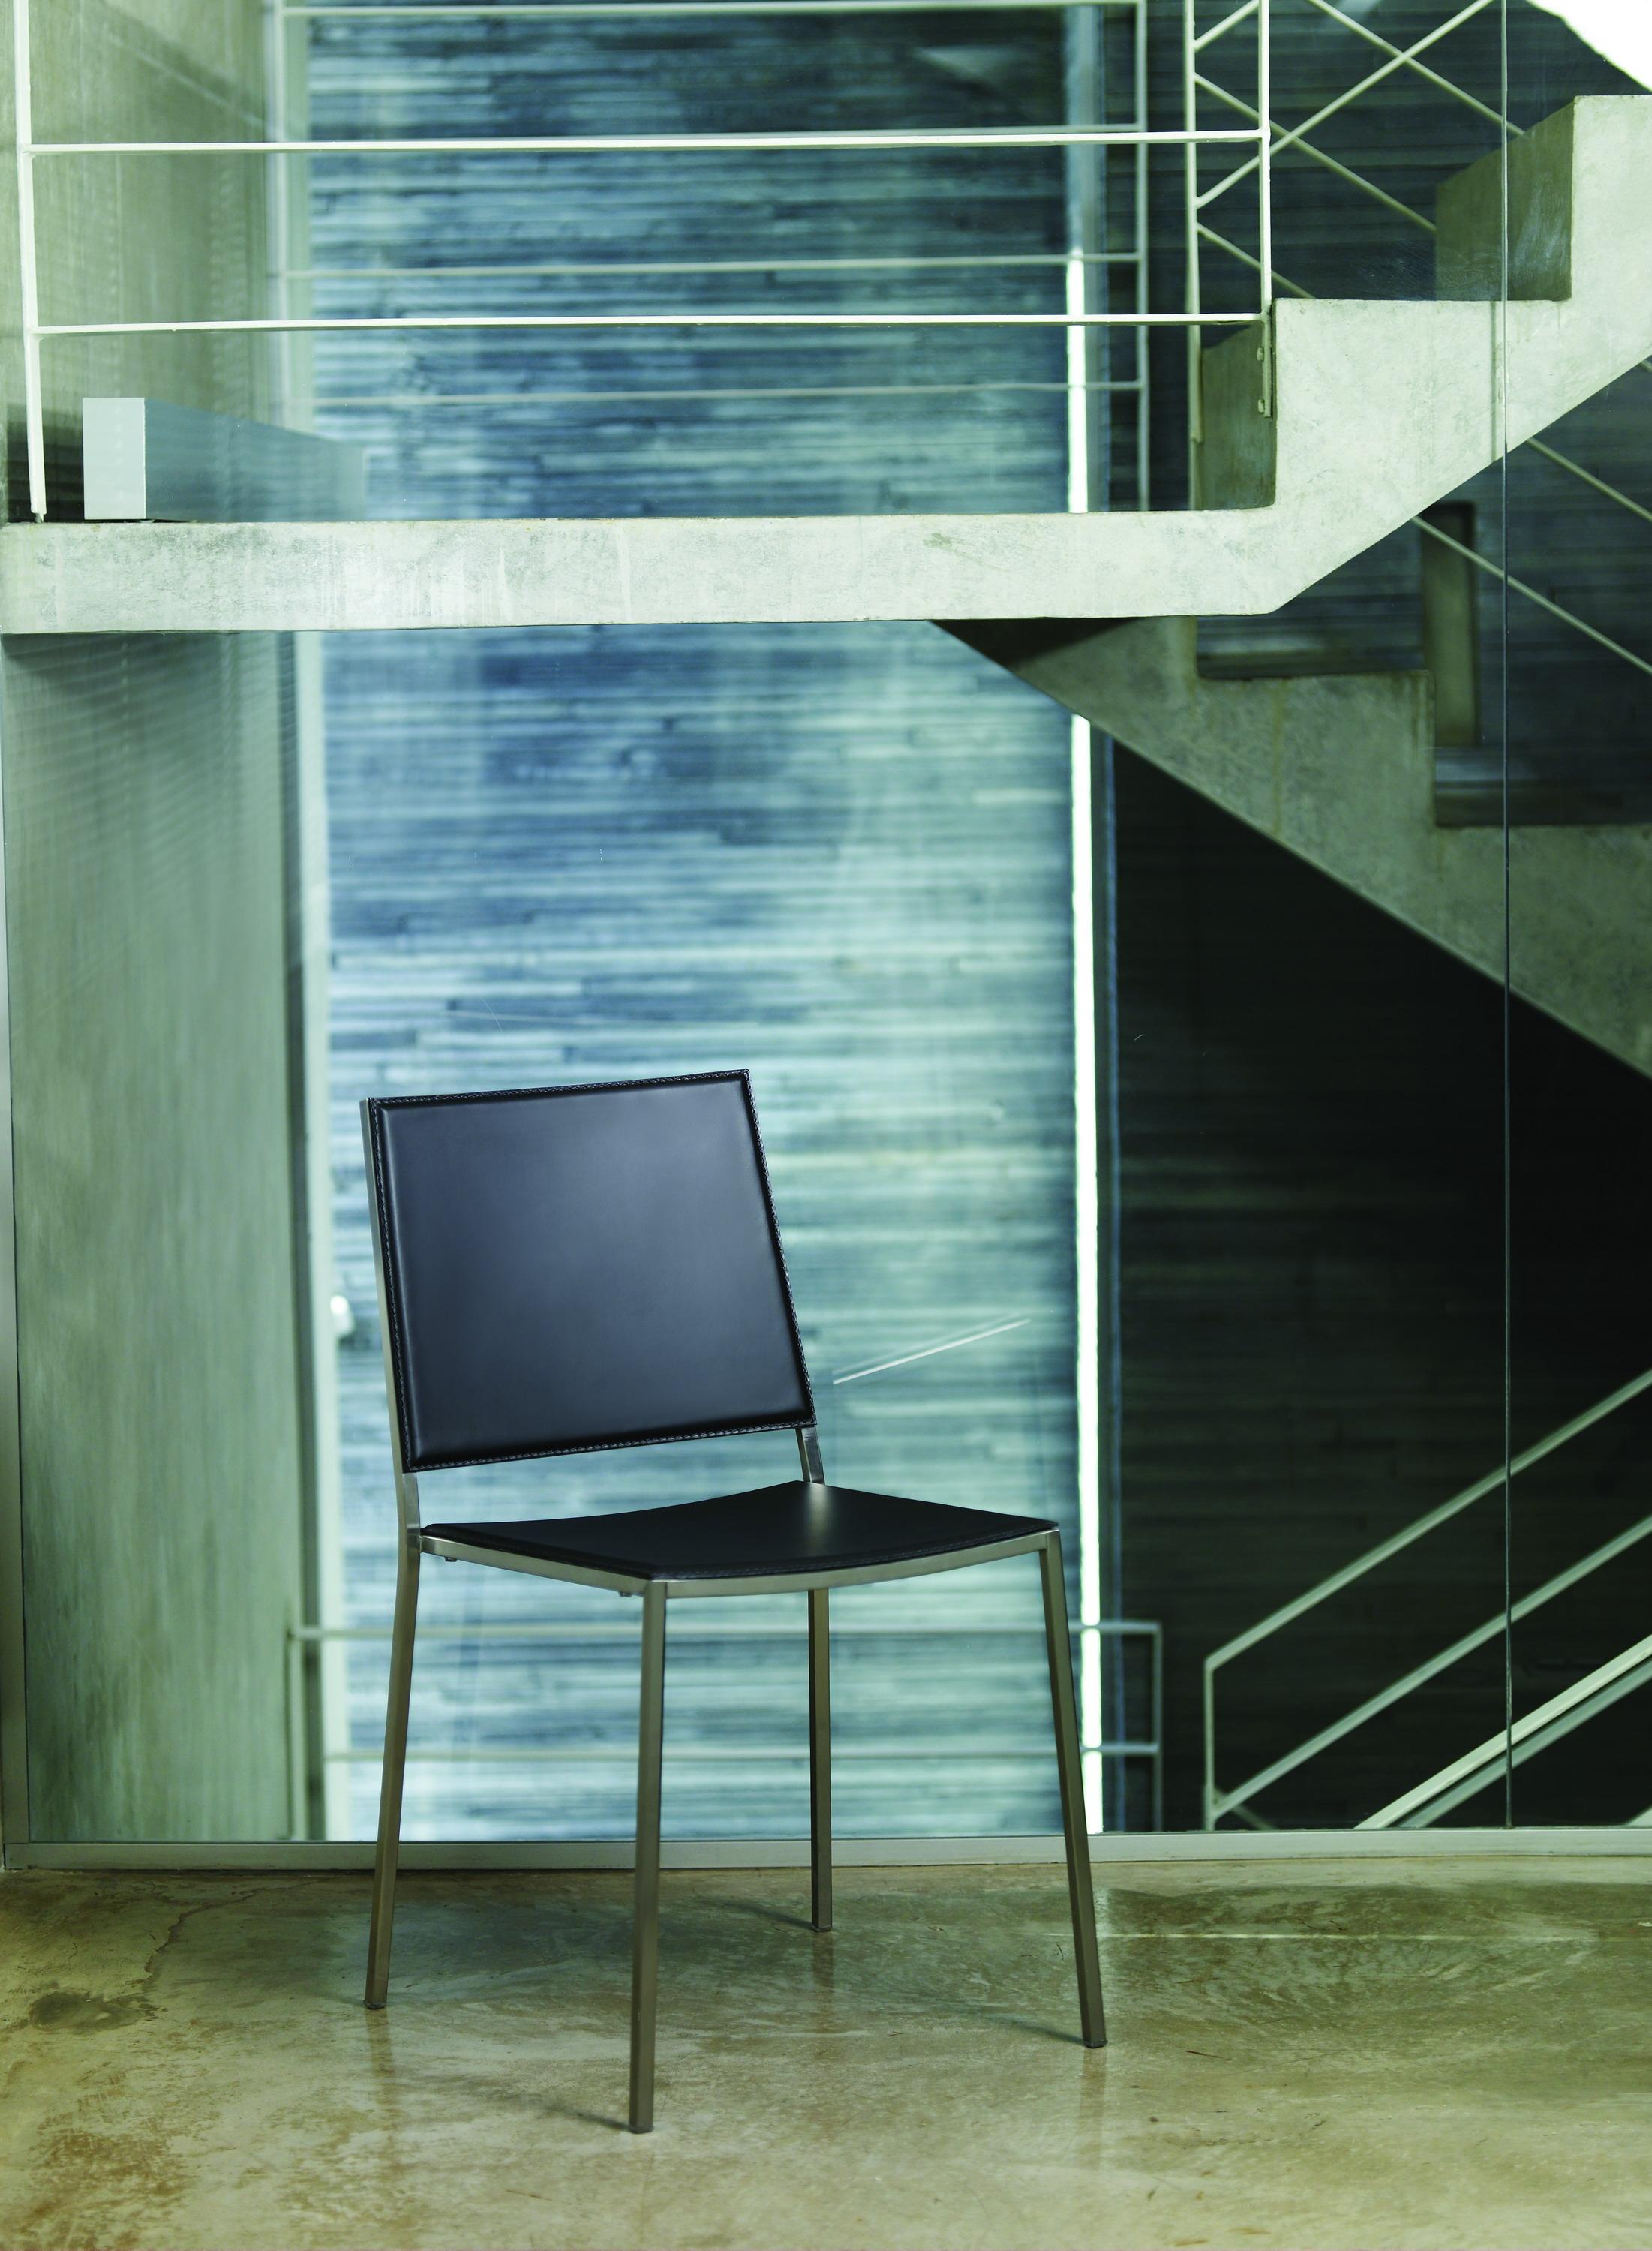 Básica Stuhl von Doimo Brasil
Abmessungen: B 49 x T 54 x H 80 cm 
MATERIALEN: Metall mit Holz oder gepolstertem Sitz.


Mit der Absicht, guten Geschmack und Persönlichkeit zu vermitteln, entschlüsselt Doimo Trends und folgt der Entwicklung des